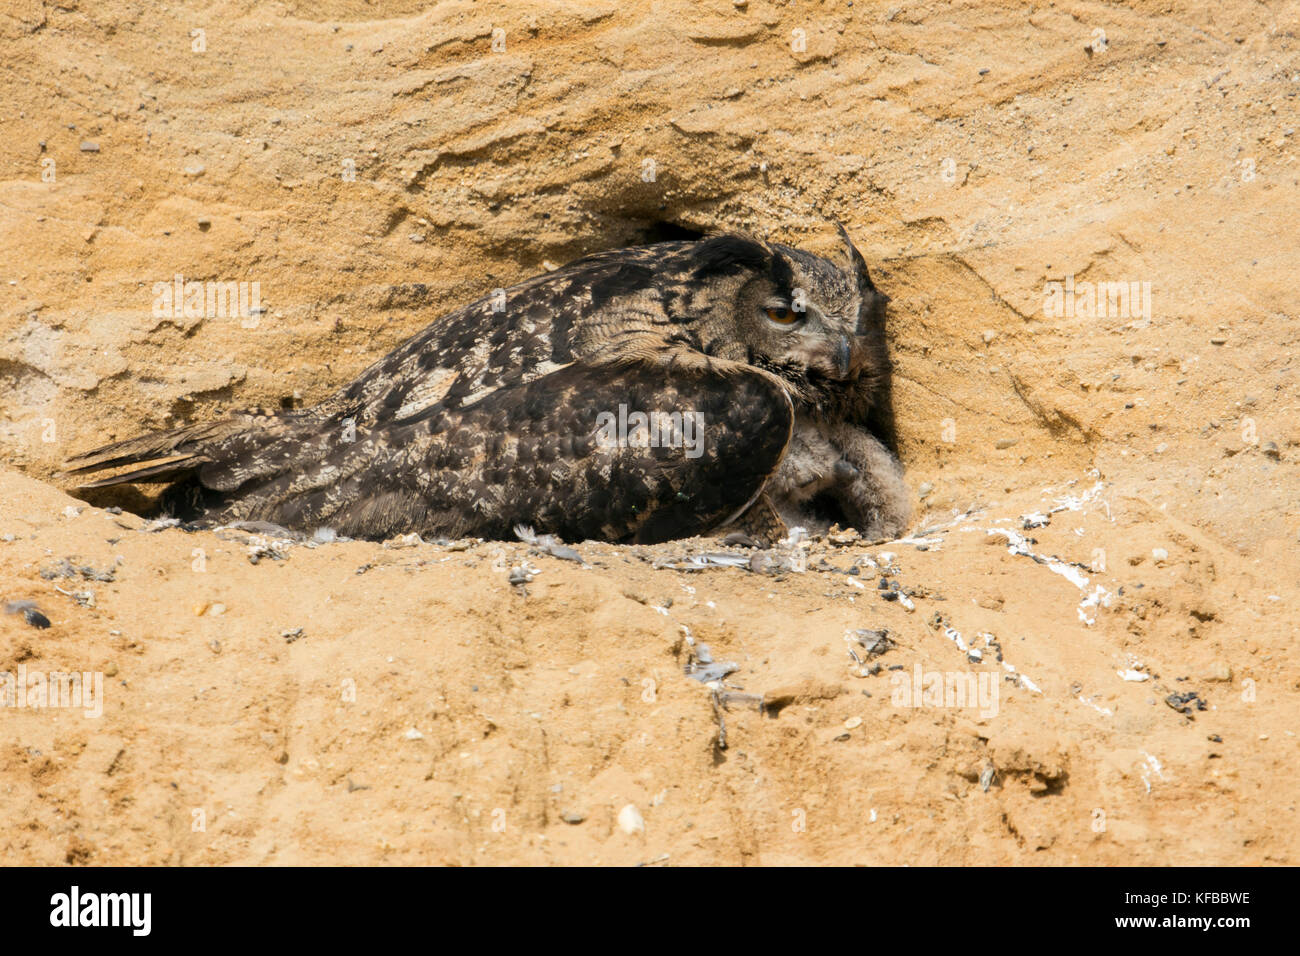 Búho de Águila / Uhu ( bubo bubo ) en su sitio de cría, adulto, cría, recolección de polluelos, en un pozo de arena, vida silvestre, Europa. Foto de stock